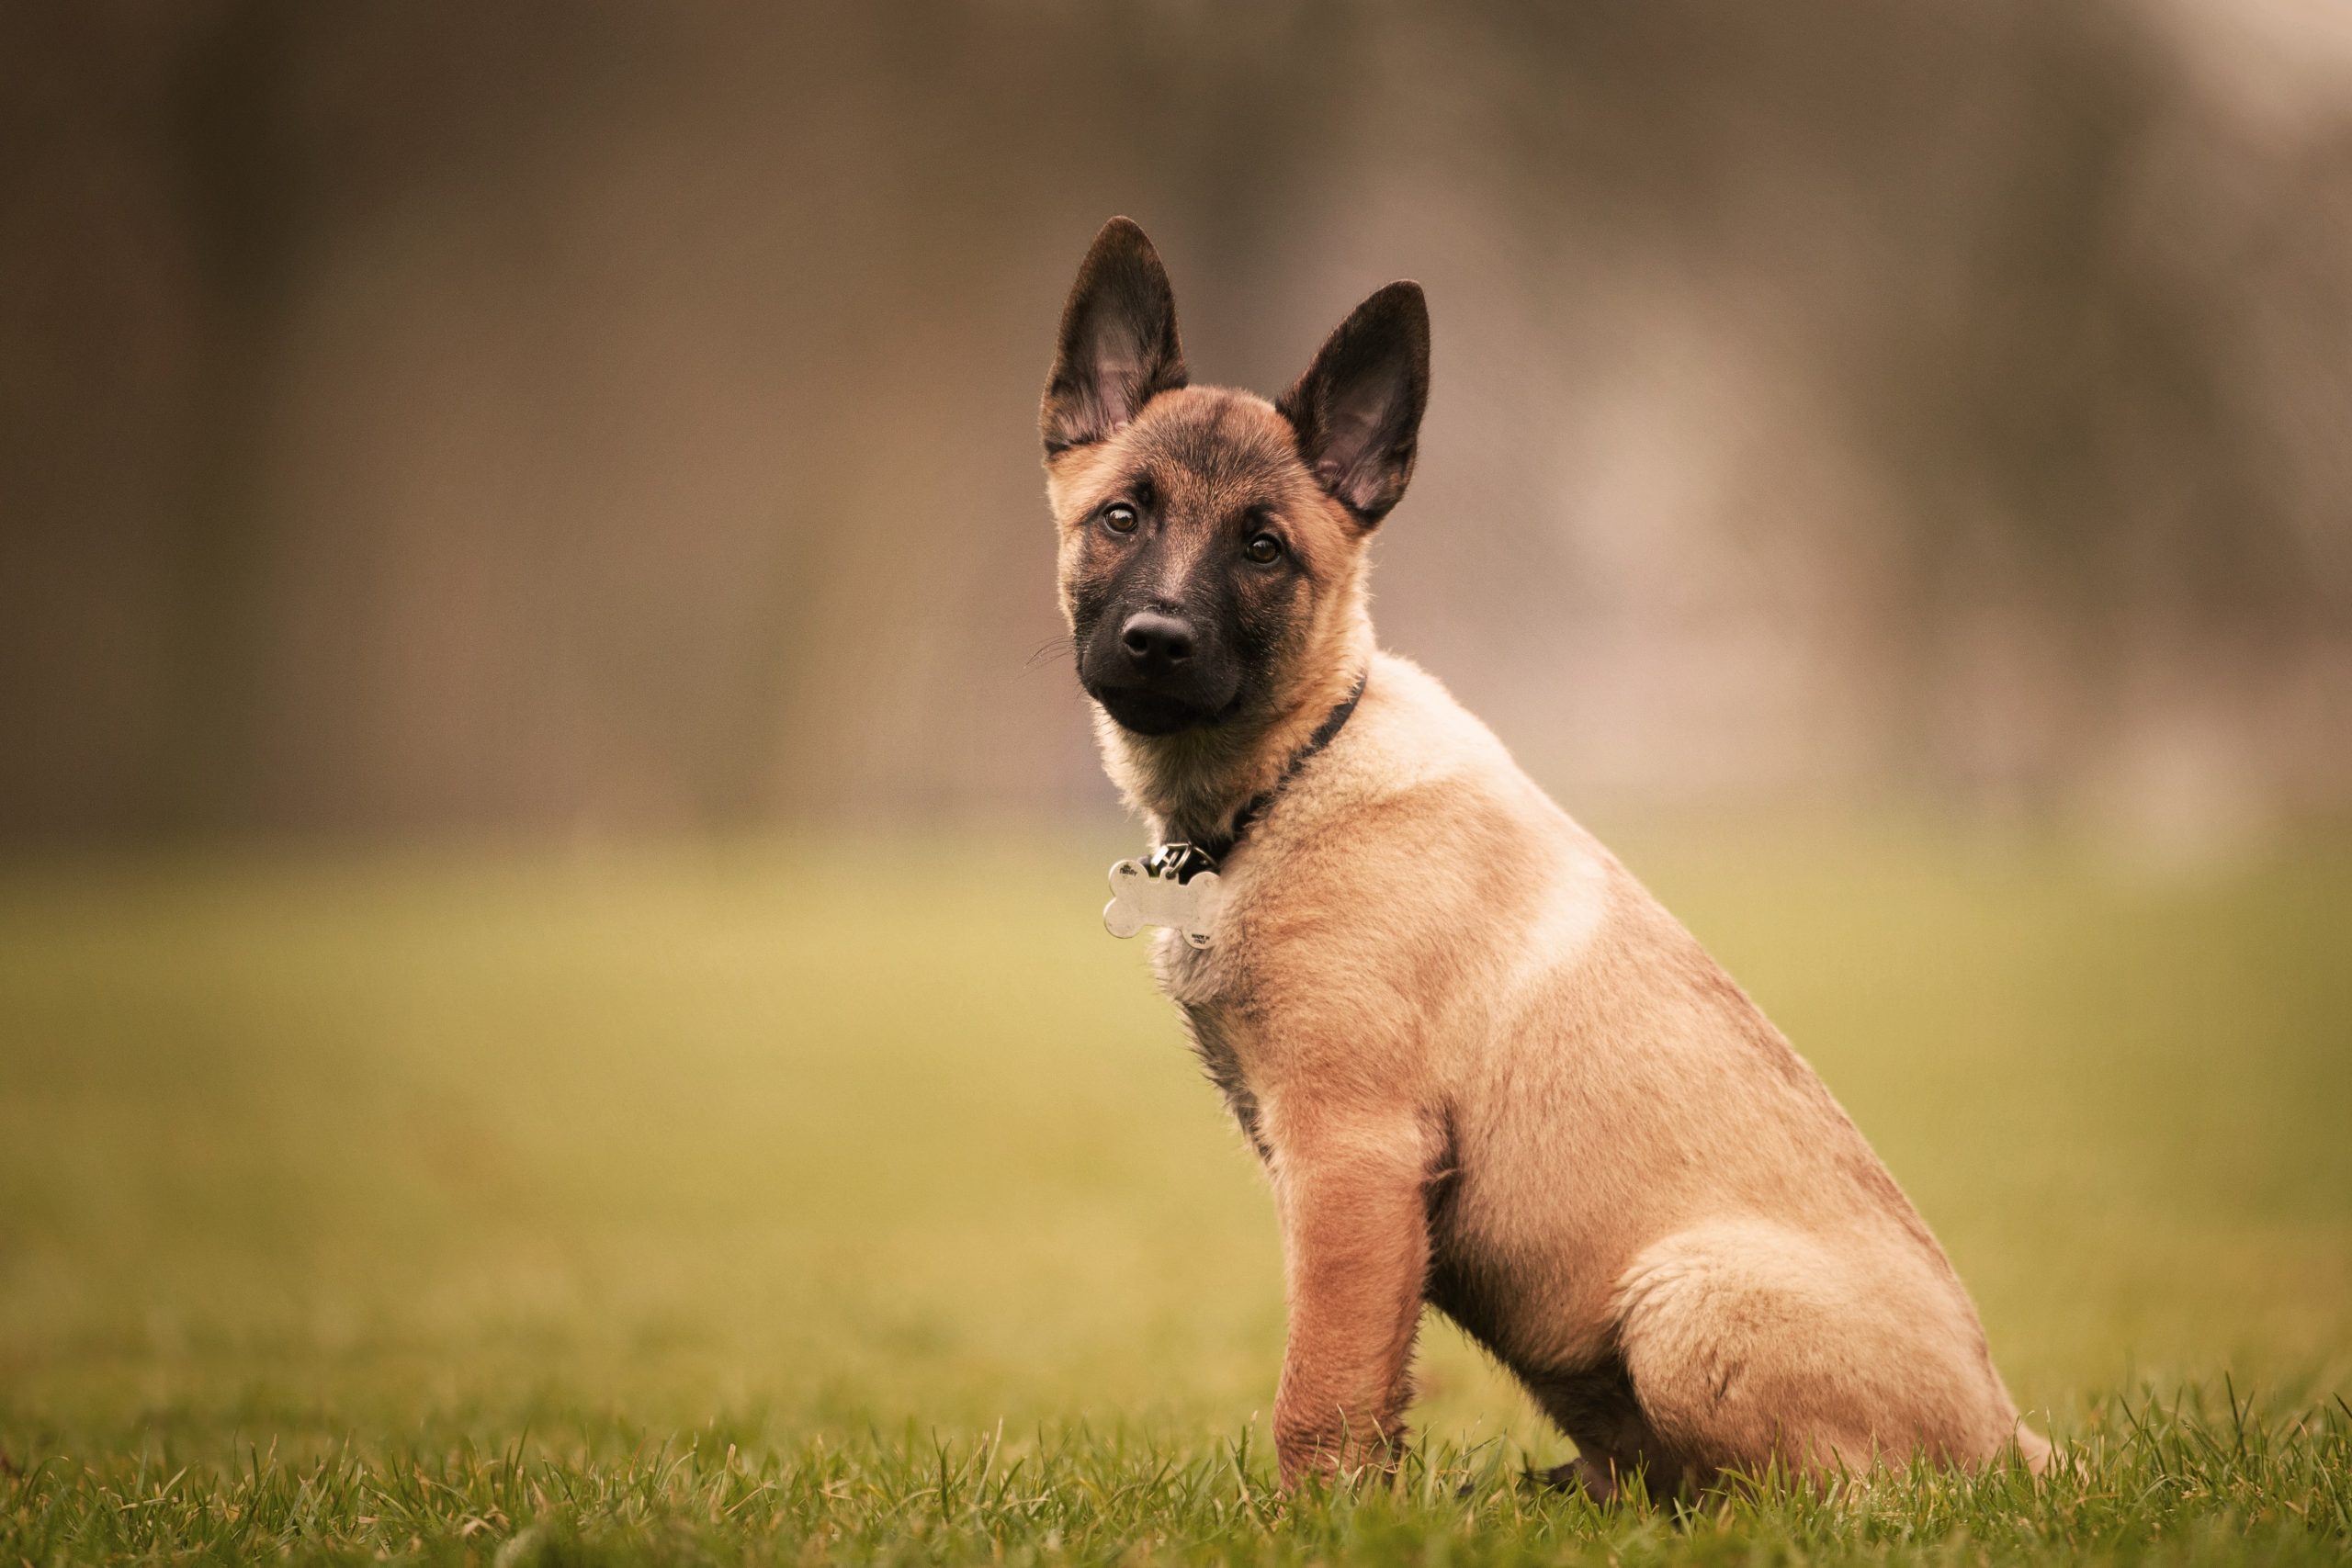  Dogs similar to German shepherds
